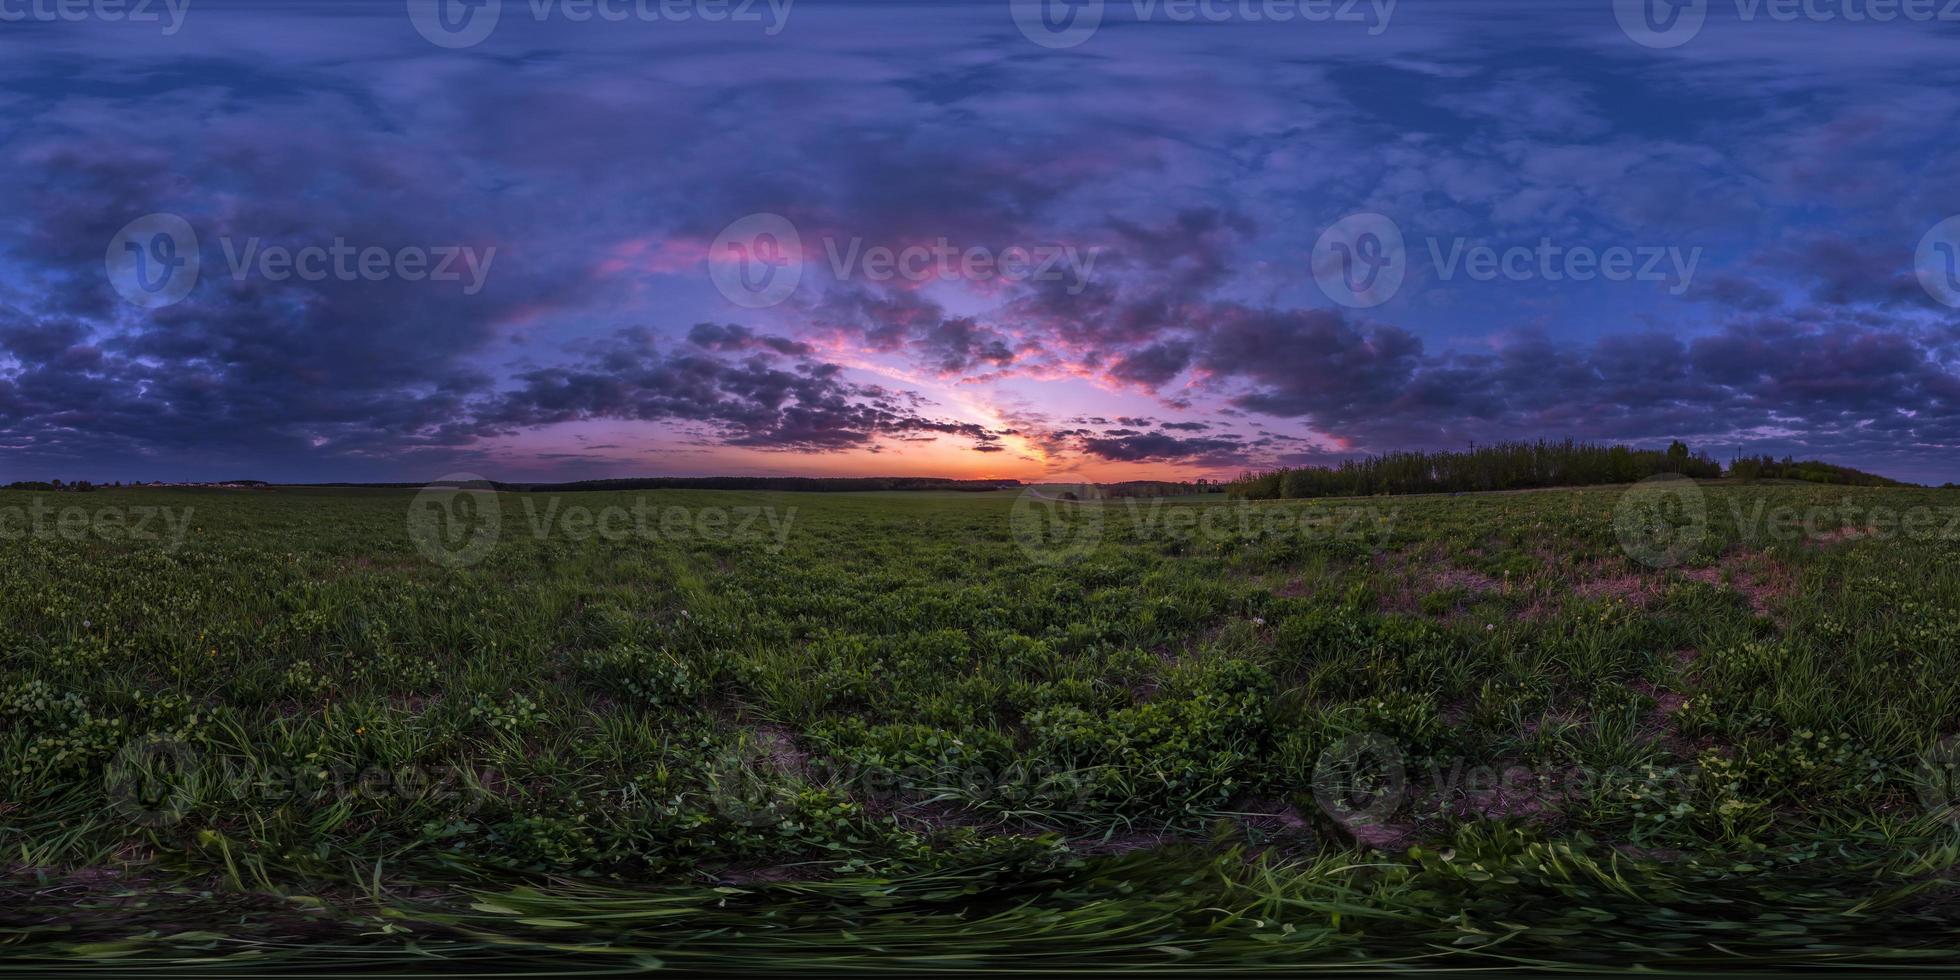 Vollständiges, nahtloses sphärisches HDRI-Panorama 360-Grad-Winkelansicht zwischen Feldern im Sommerabendsonnenuntergang mit fantastischen blau-rosa-roten Wolken in equirectangularer Projektion, bereit für die virtuelle Realität von vr ar foto